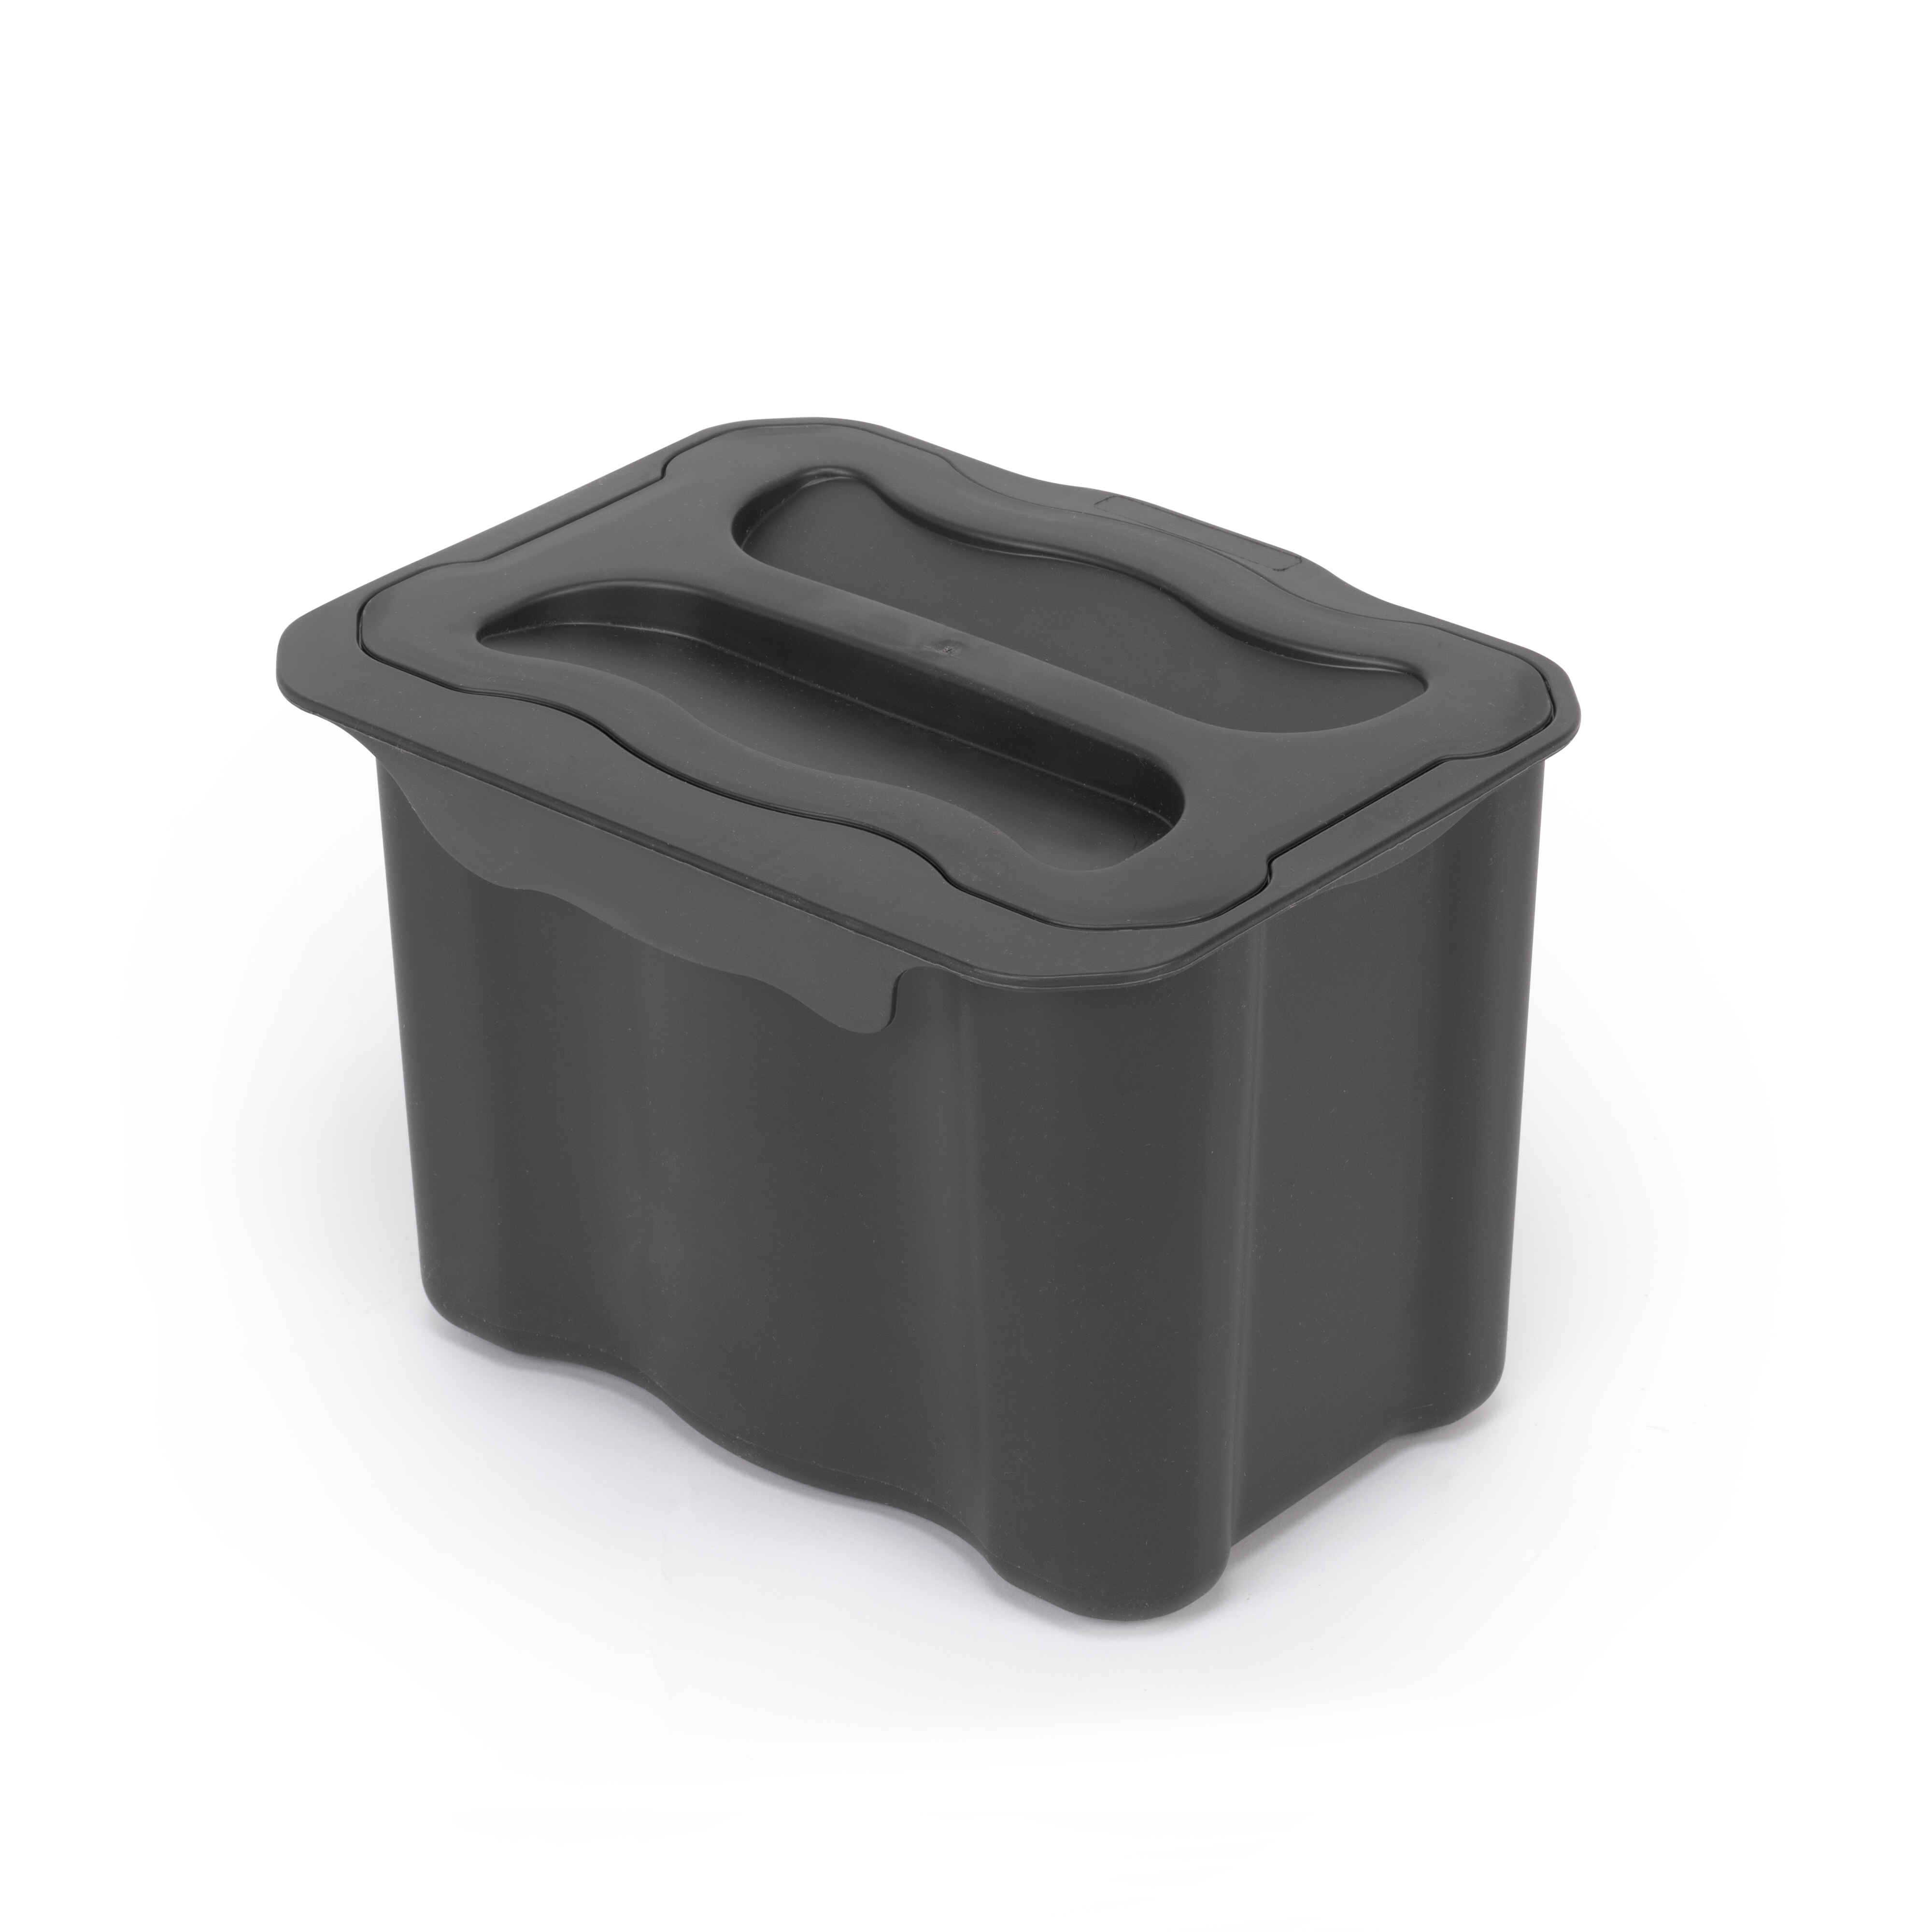 Contenedor de reciclaje auxiliar Recycle de 5 L para cocina, Plástico gris antracita, Plástico, 1 un